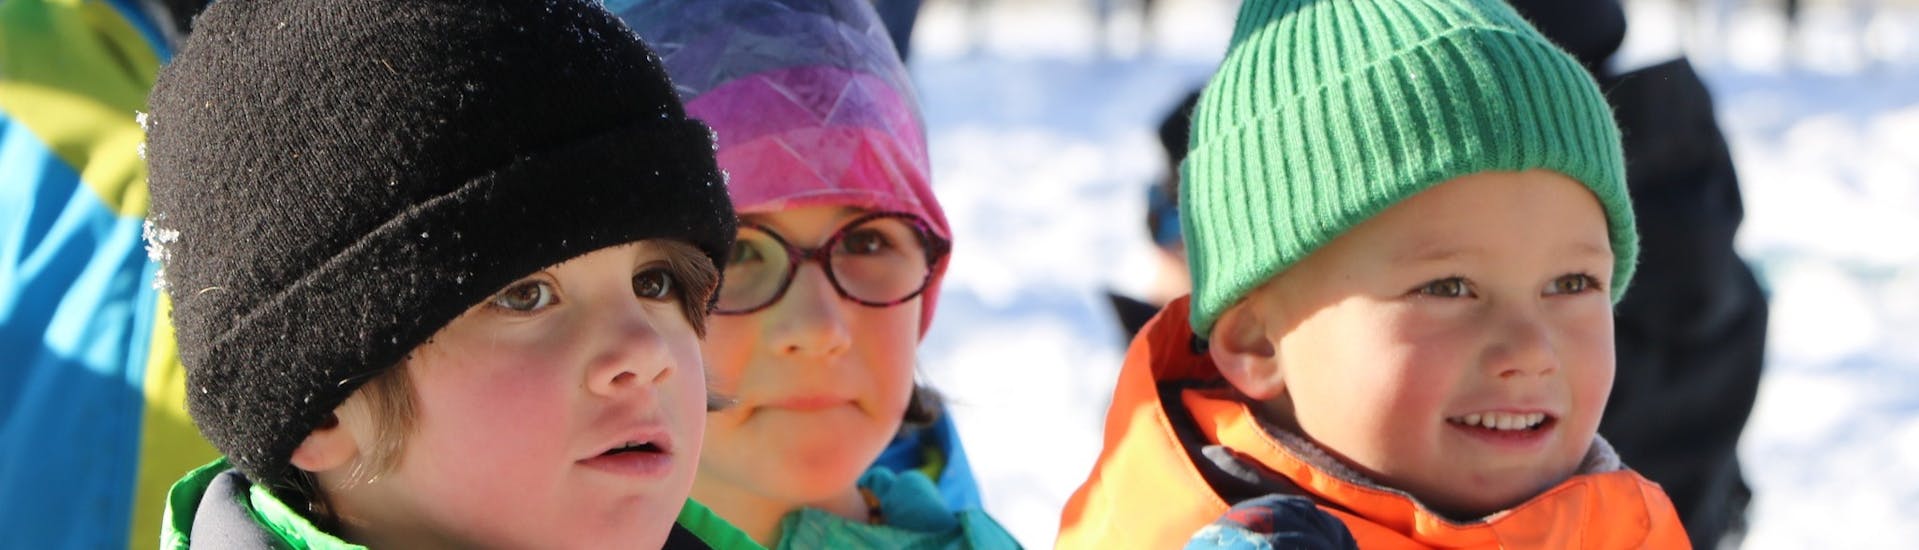 Petits enfants lors du Cours de ski Enfants "Baby Ski" (2-3 ans) avec Prosneige Val Thorens & Les Menuires.